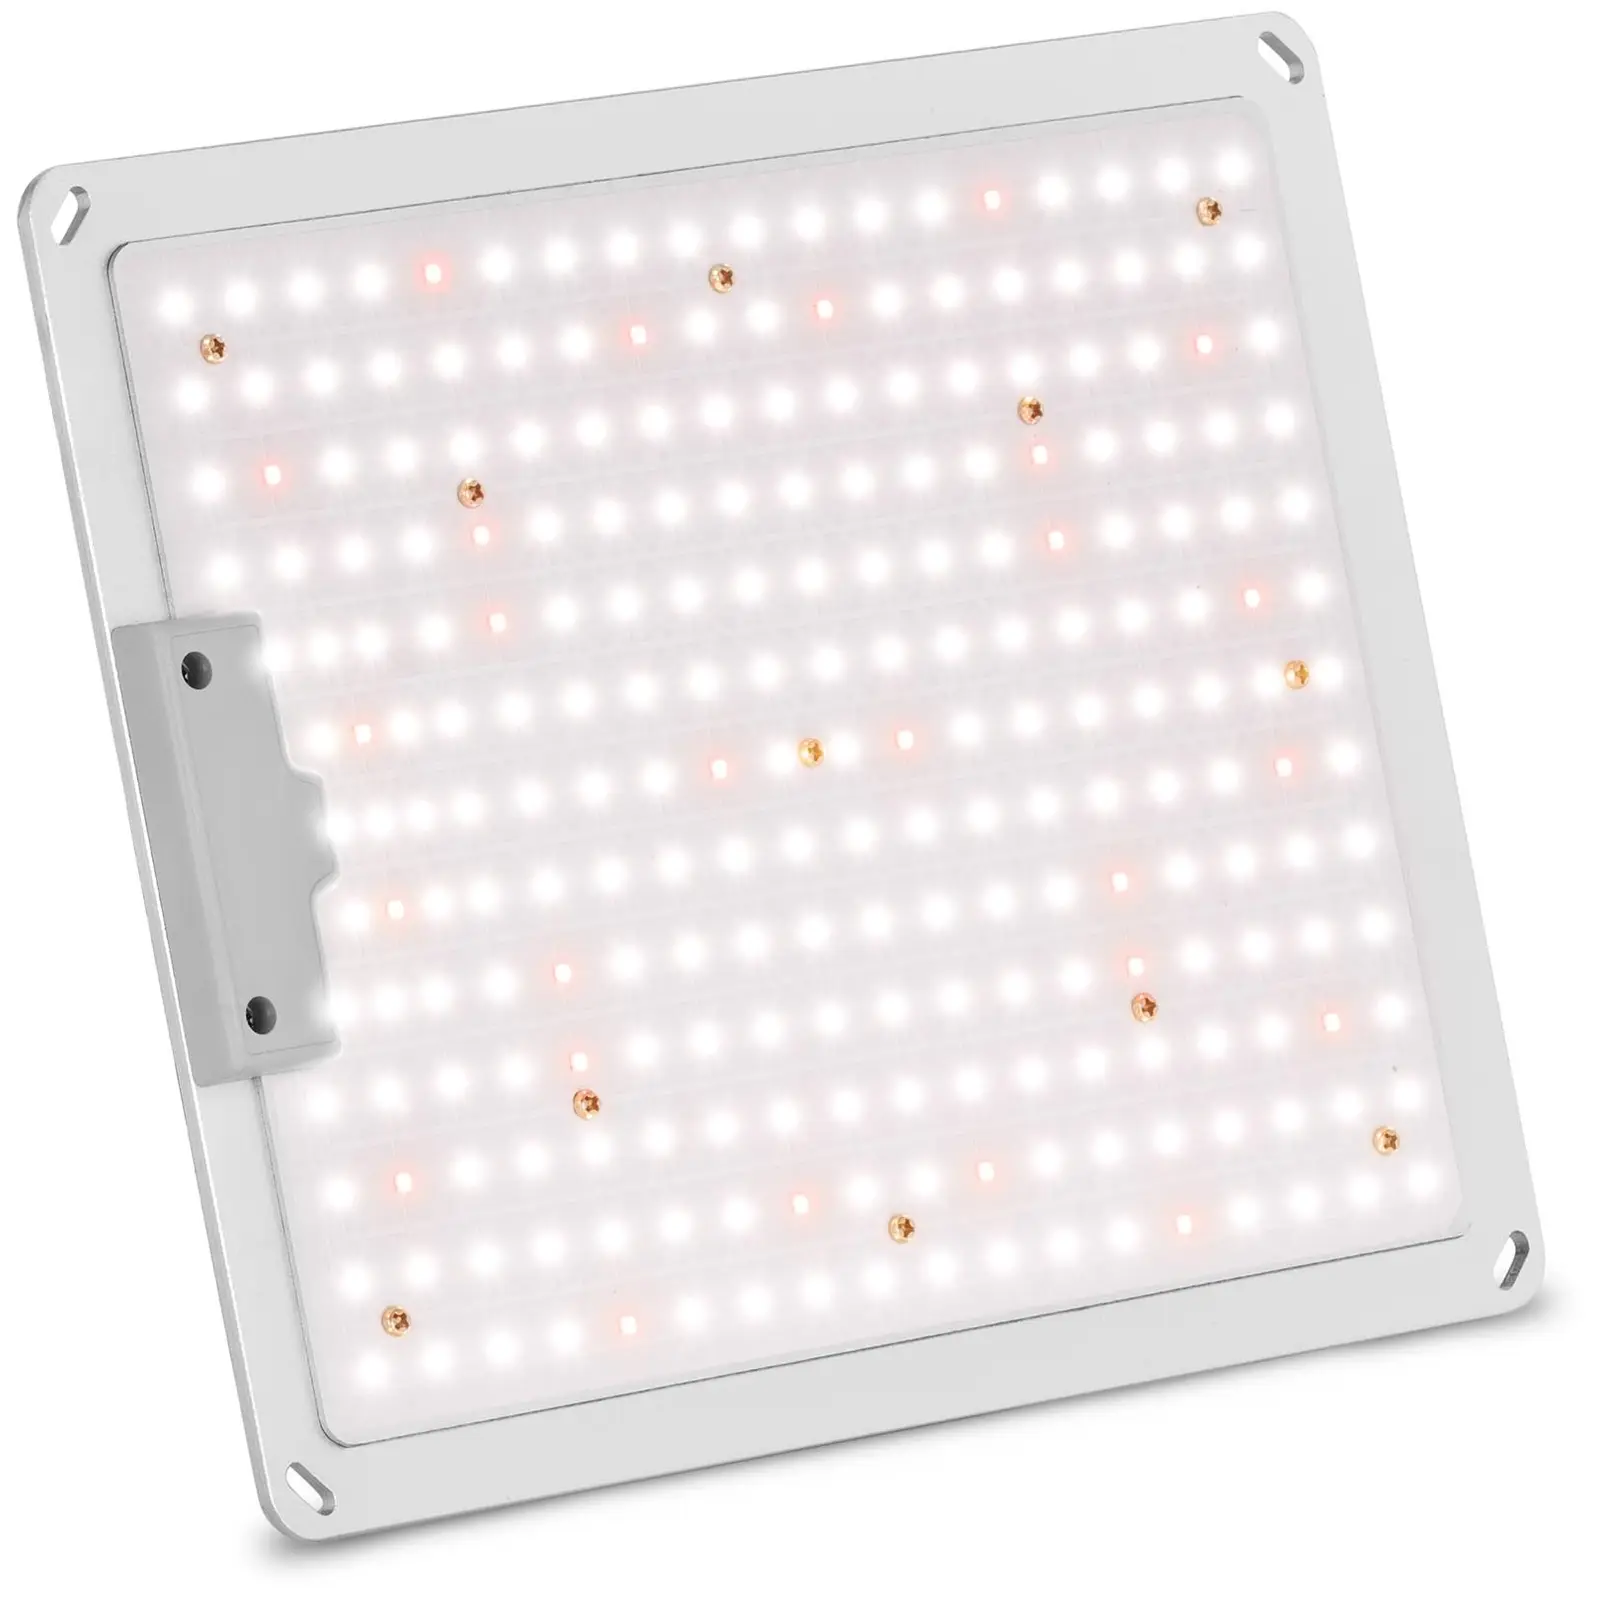 Lampada per piante - LED - Spettro completo - 110 W - 234 LED